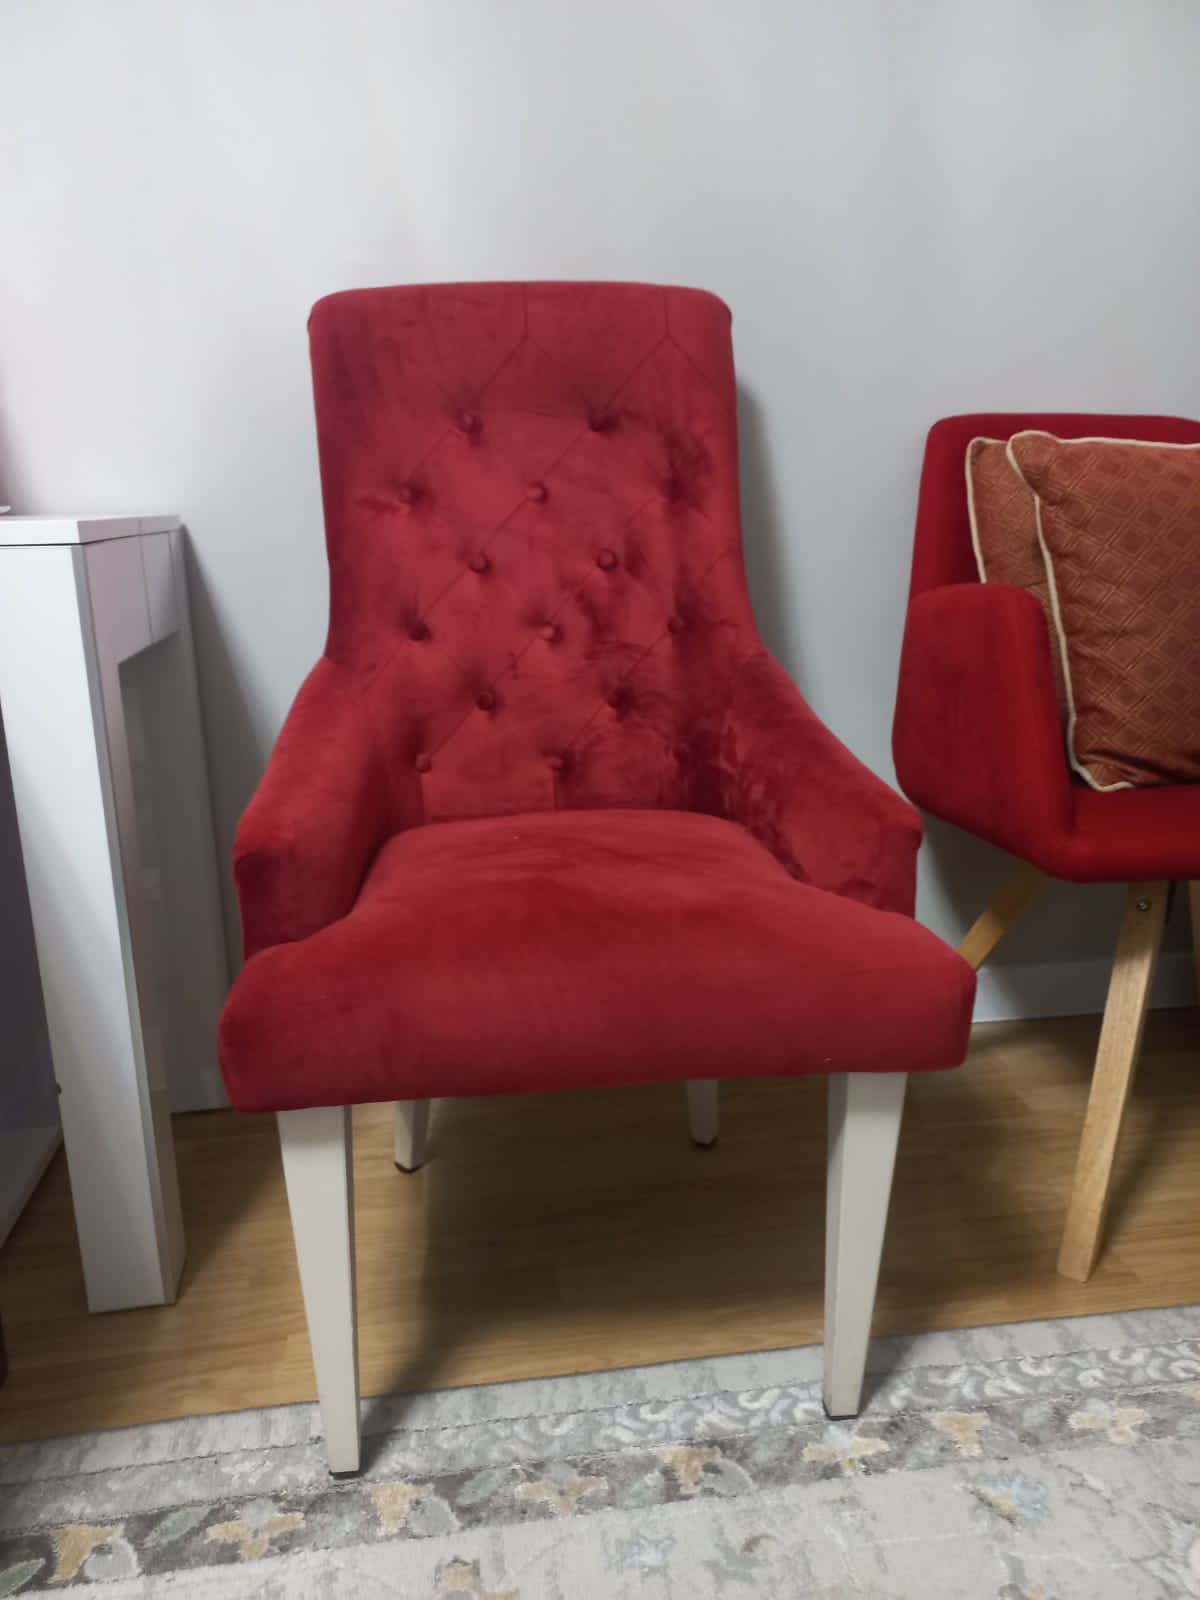 Продается кресло в отличном состоянии